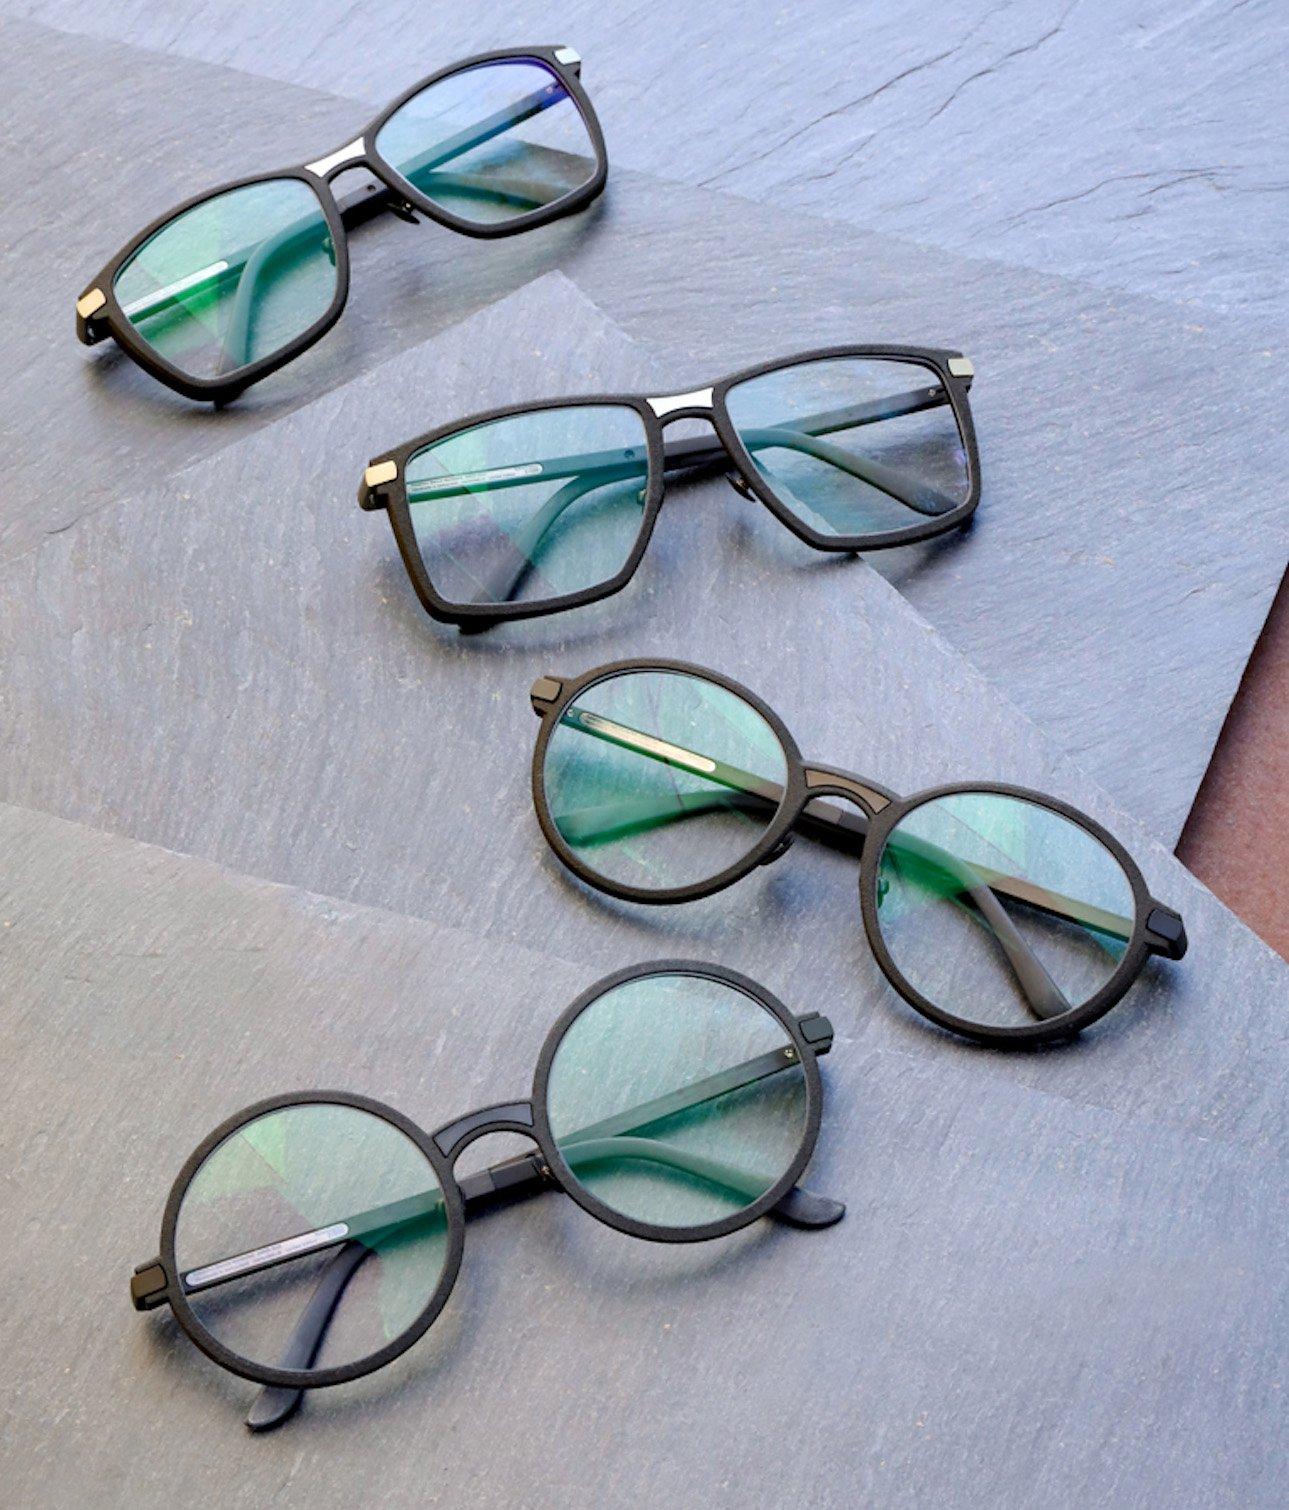 Gli occhiali di Marcus Marienfeld realizzati in Nylon 11 Powder e carbonio.